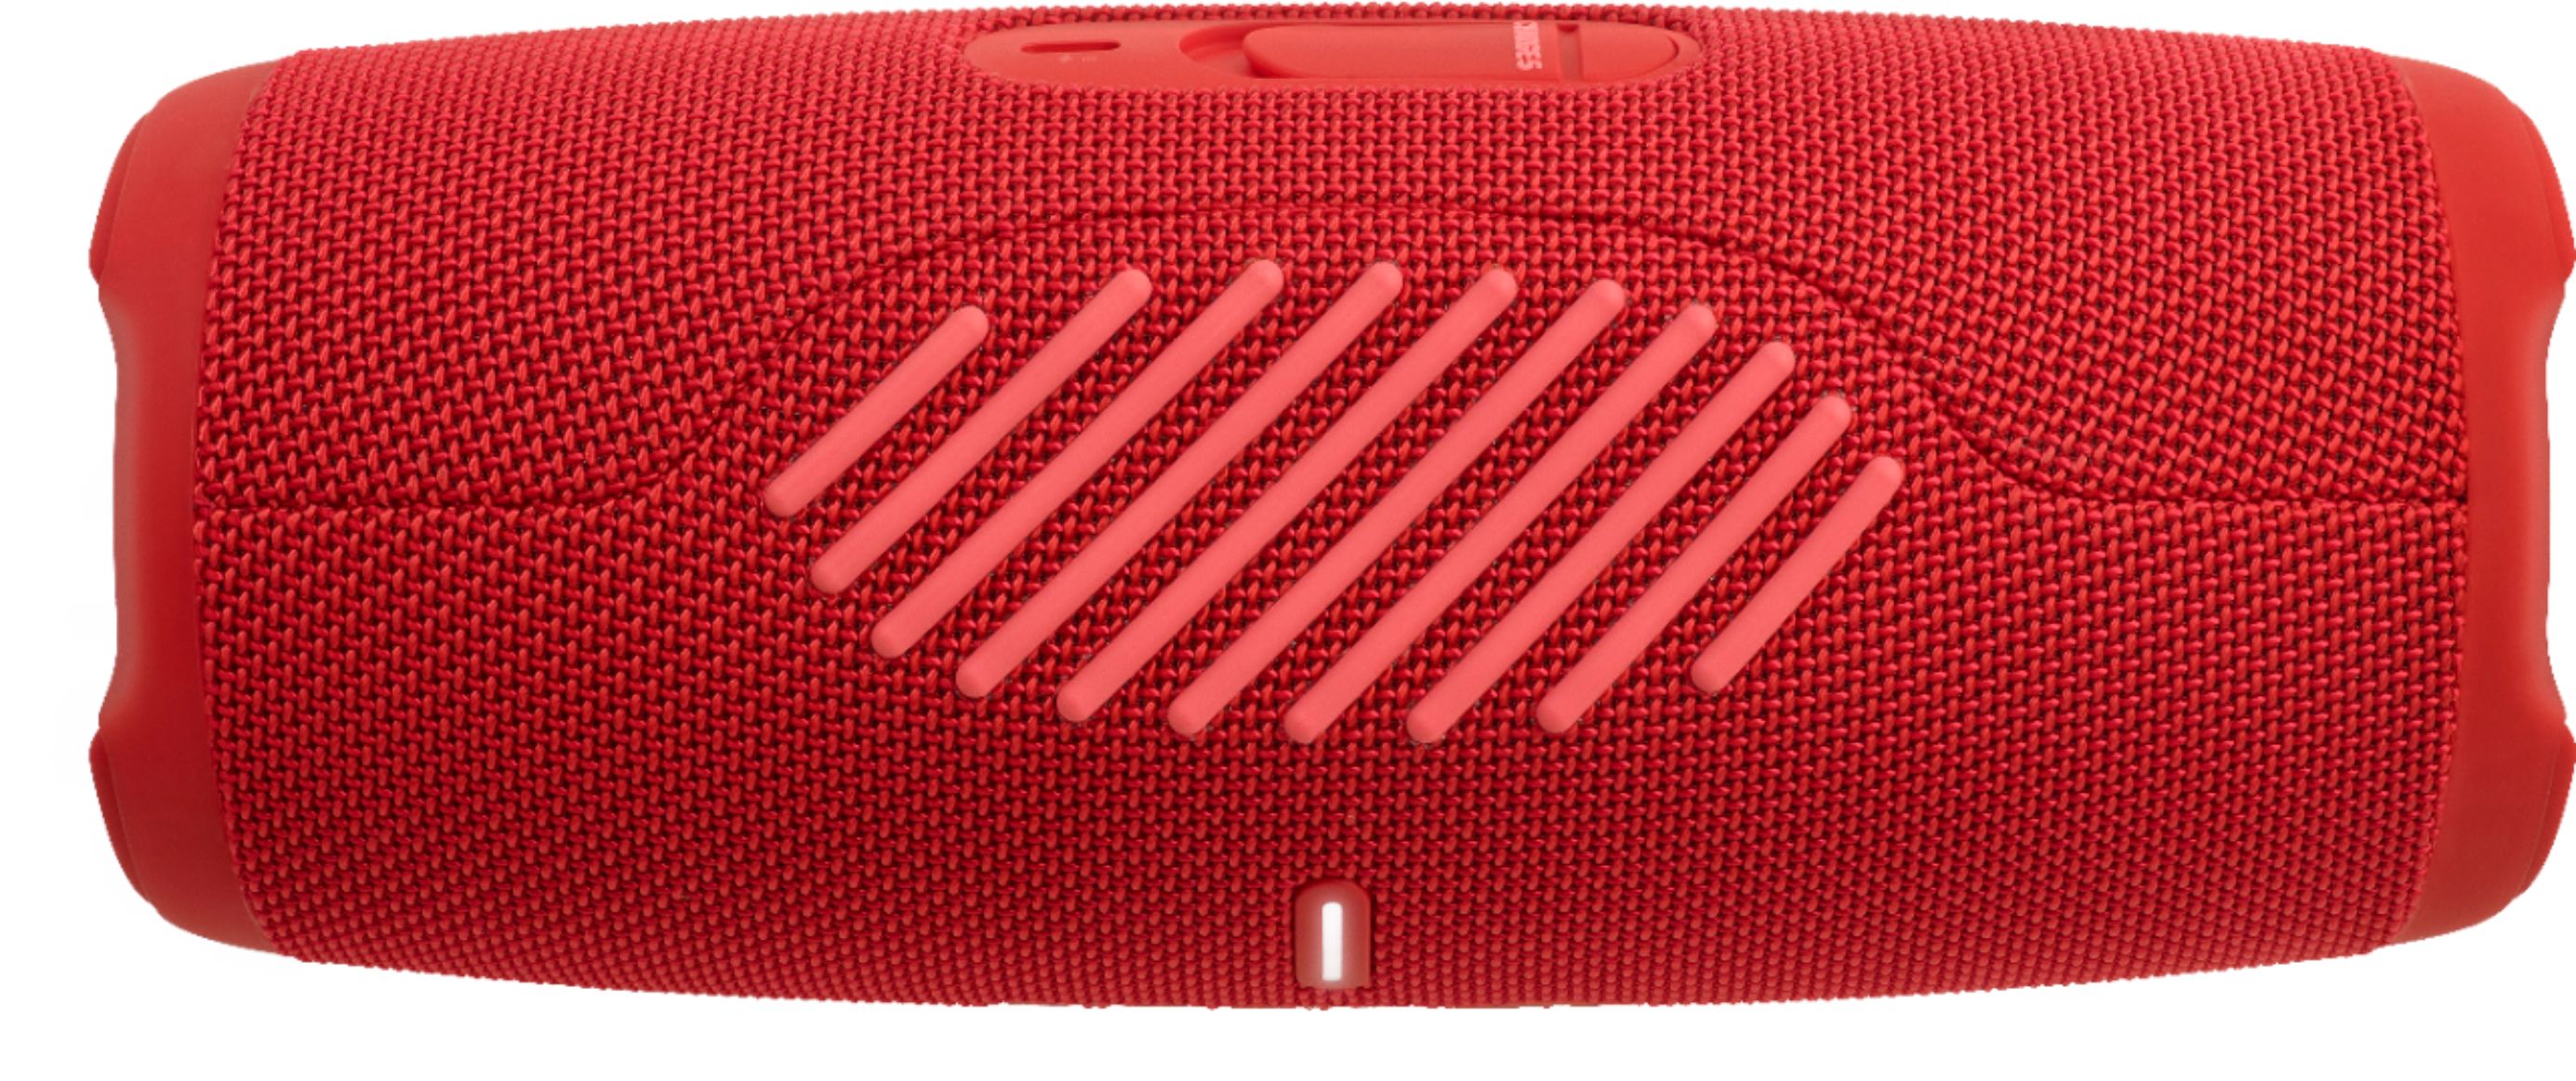 Jbl Charge 5 Portable Bluetooth Waterproof Speaker - Red - Target Certified  Refurbished : Target